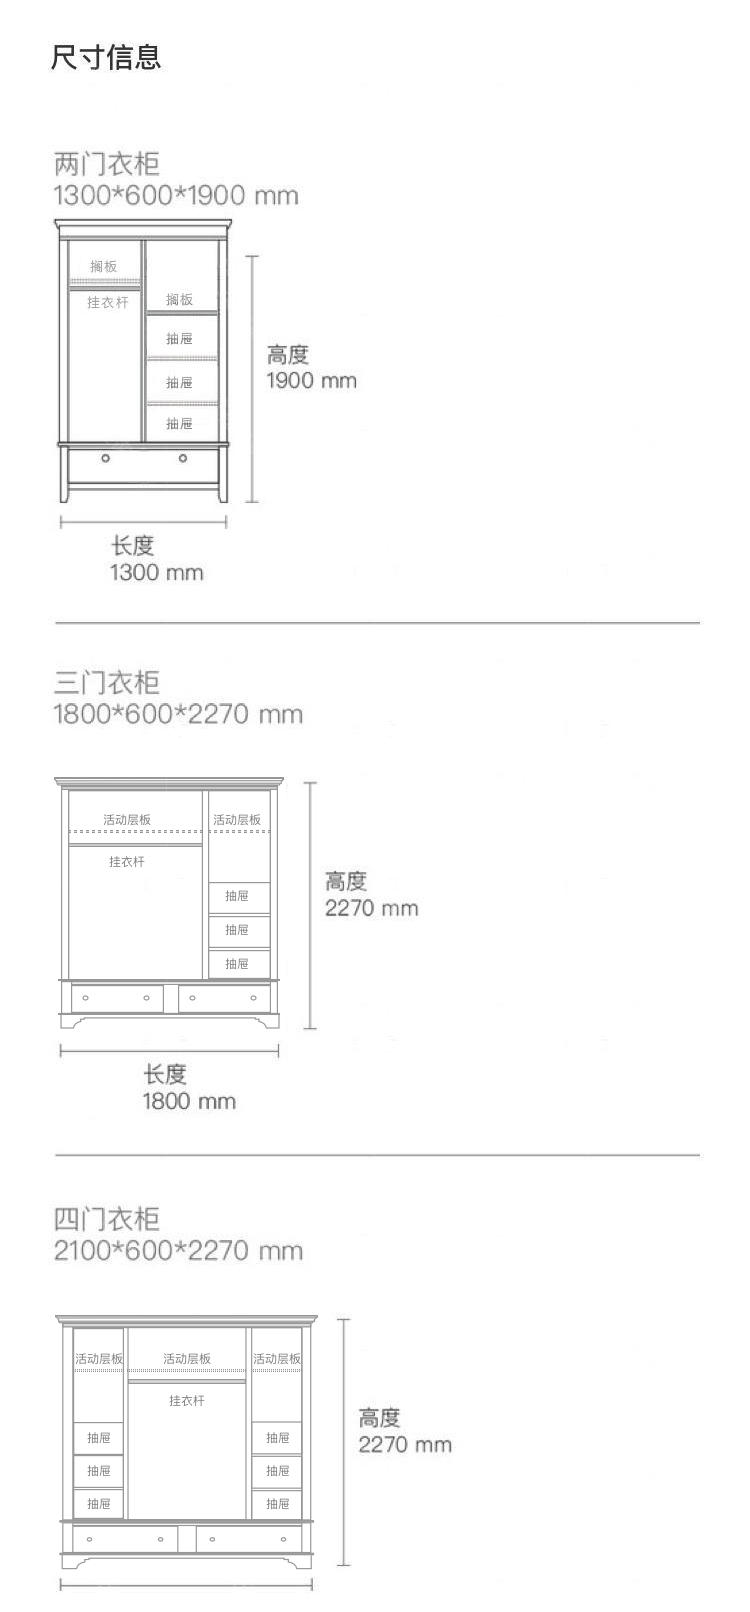 简约美式风格福克斯衣柜的家具详细介绍